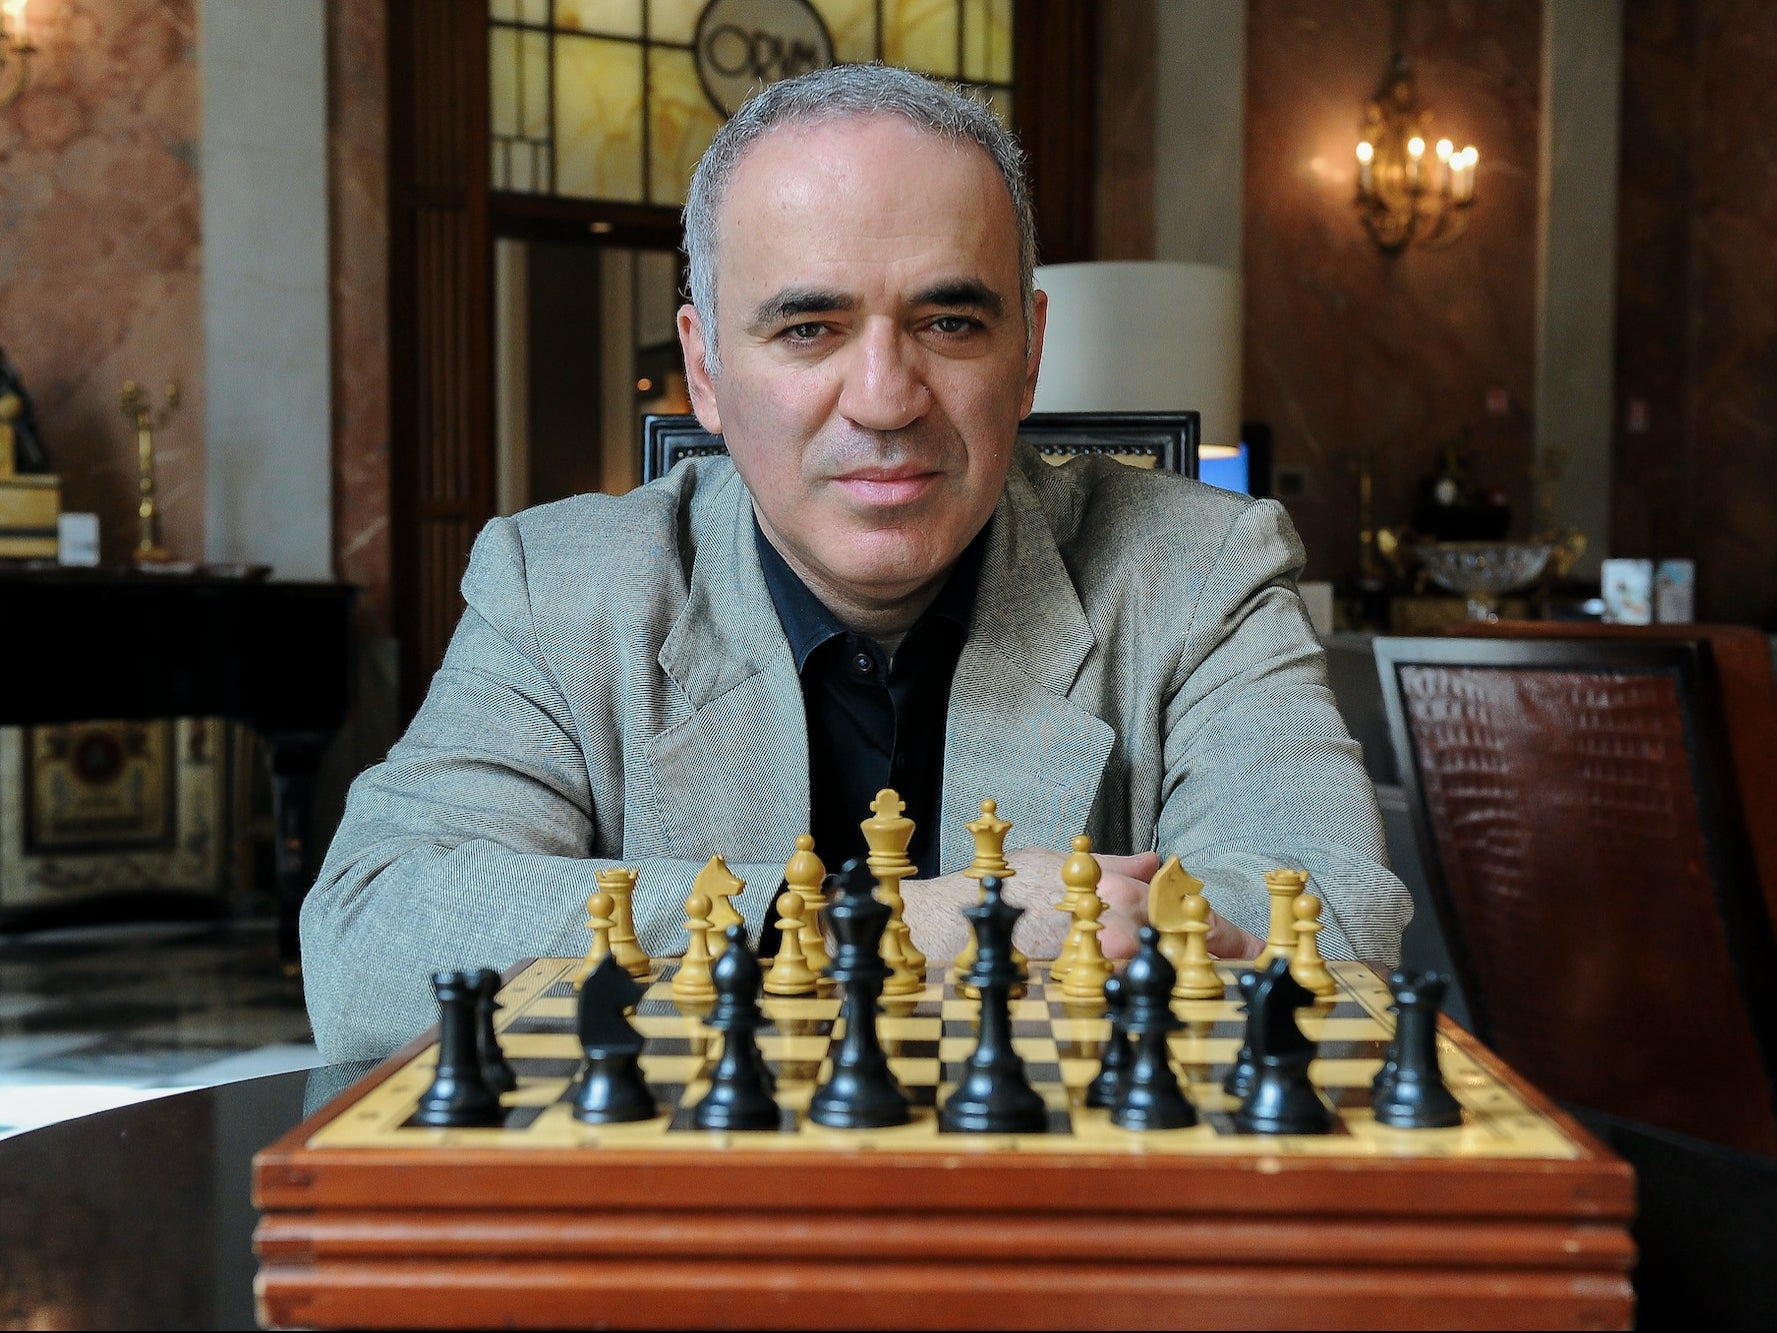 World Championship, Anatoly Karpov during match vs Garry Kasparov, News  Photo - Getty Images